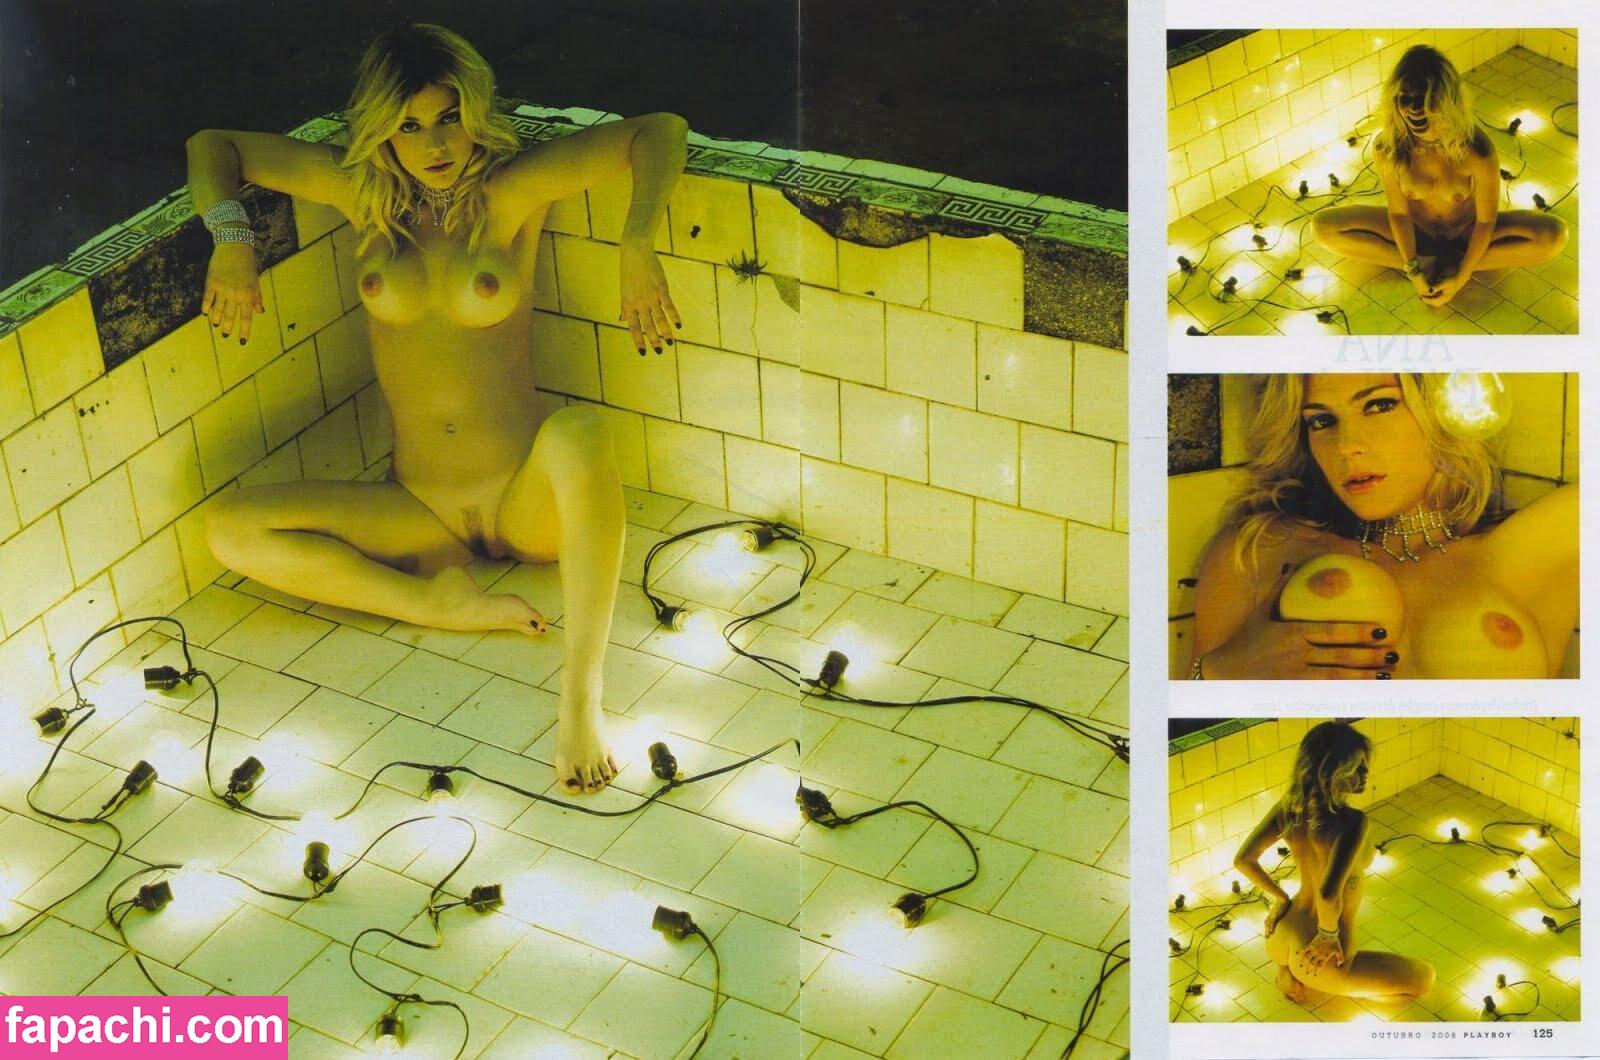 Ana Paula Nude Bathtub Sex Tape Video Leaked